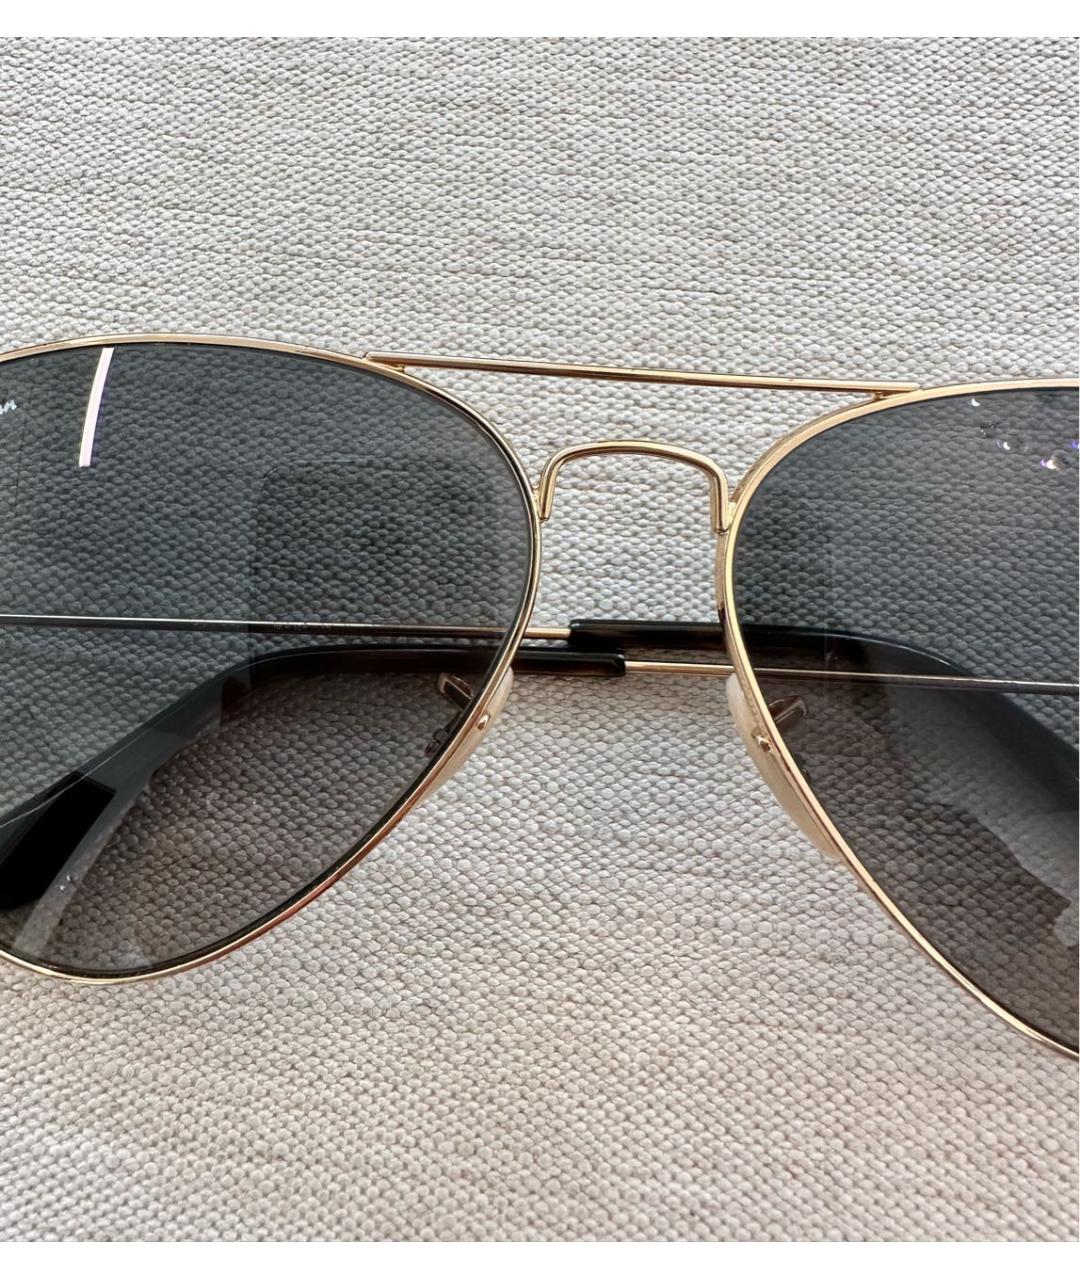 RAY BAN Золотые металлические солнцезащитные очки, фото 8